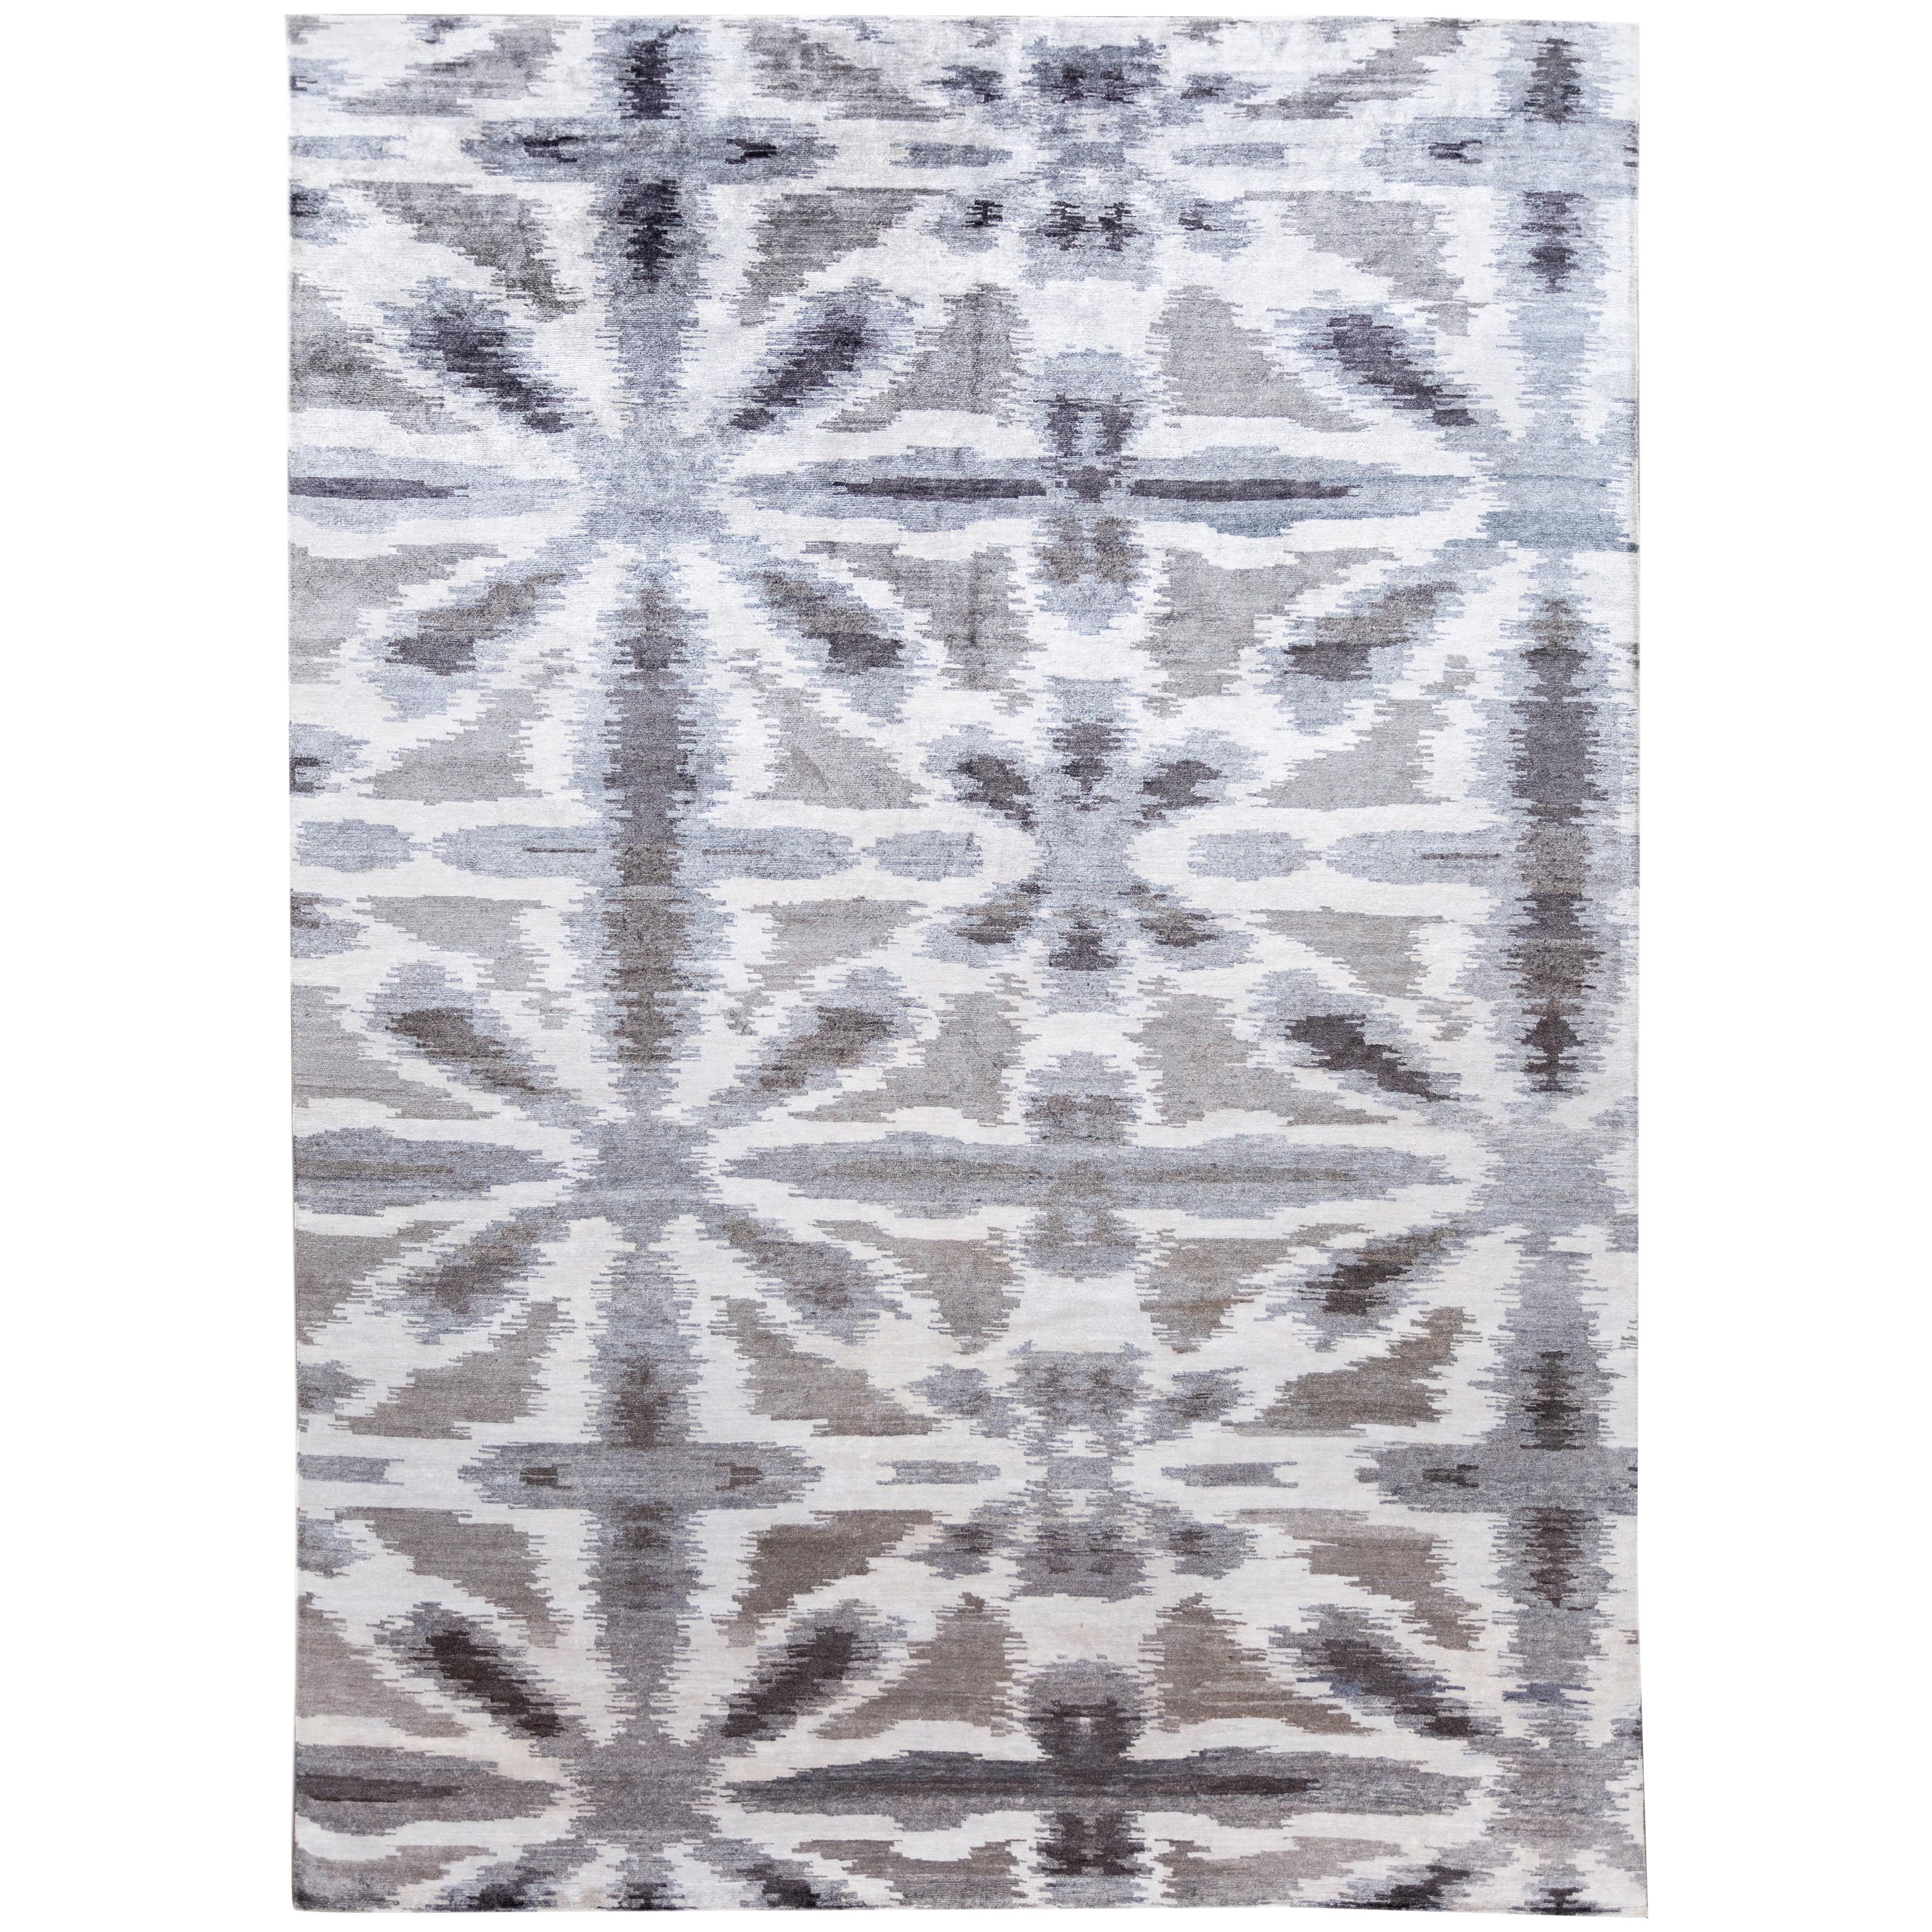 Zeitgenössischer abstrakter grauer und weißer Seidenteppich